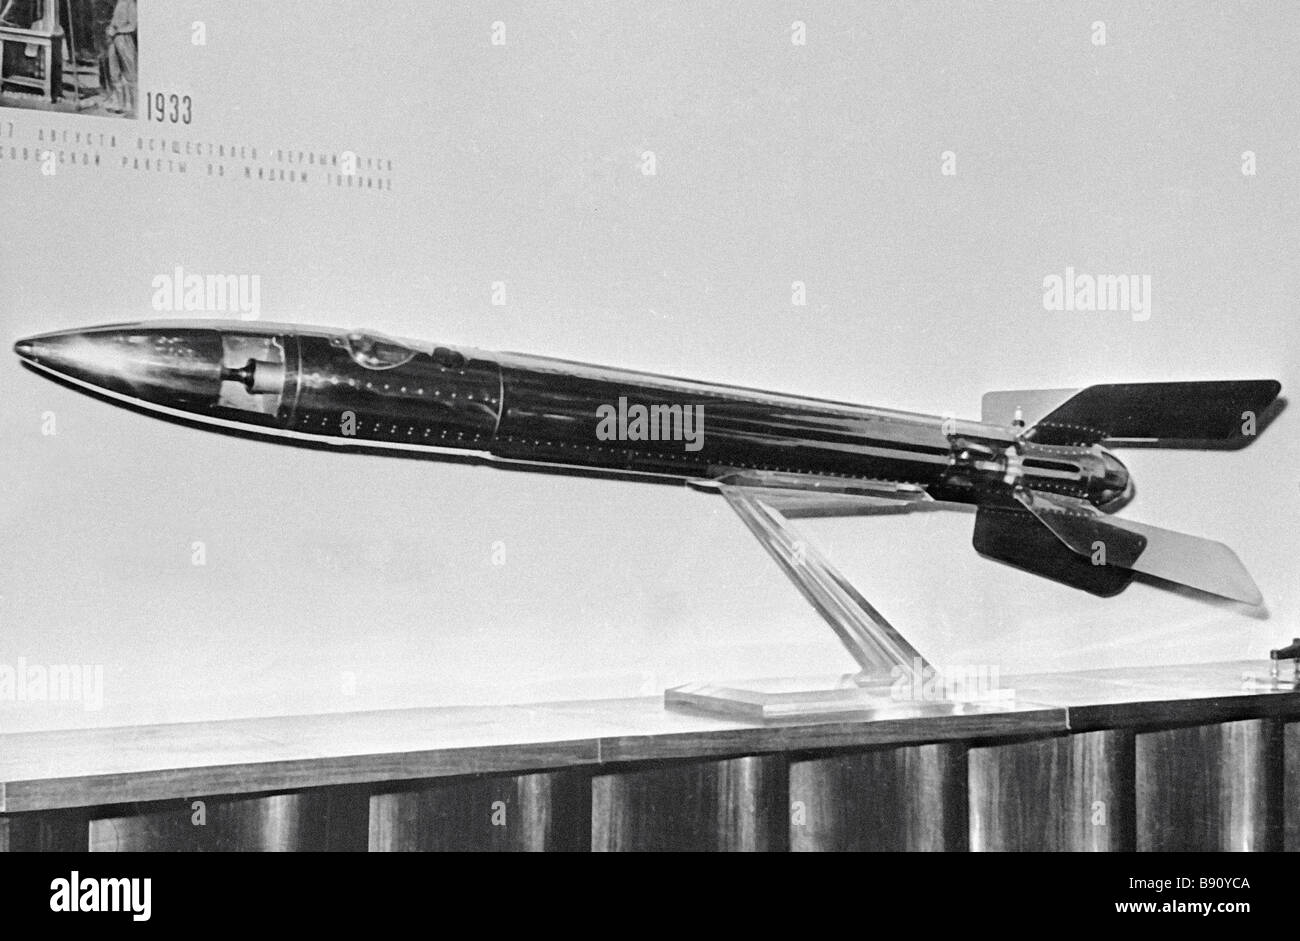 Создатель ракеты на жидком топливе. Ракета ГИРД 10. Первая ракета на жидком топливе 1933. ГИРД 09 ракета. Первая Советская жидкостная ракета «ГИРД-09».